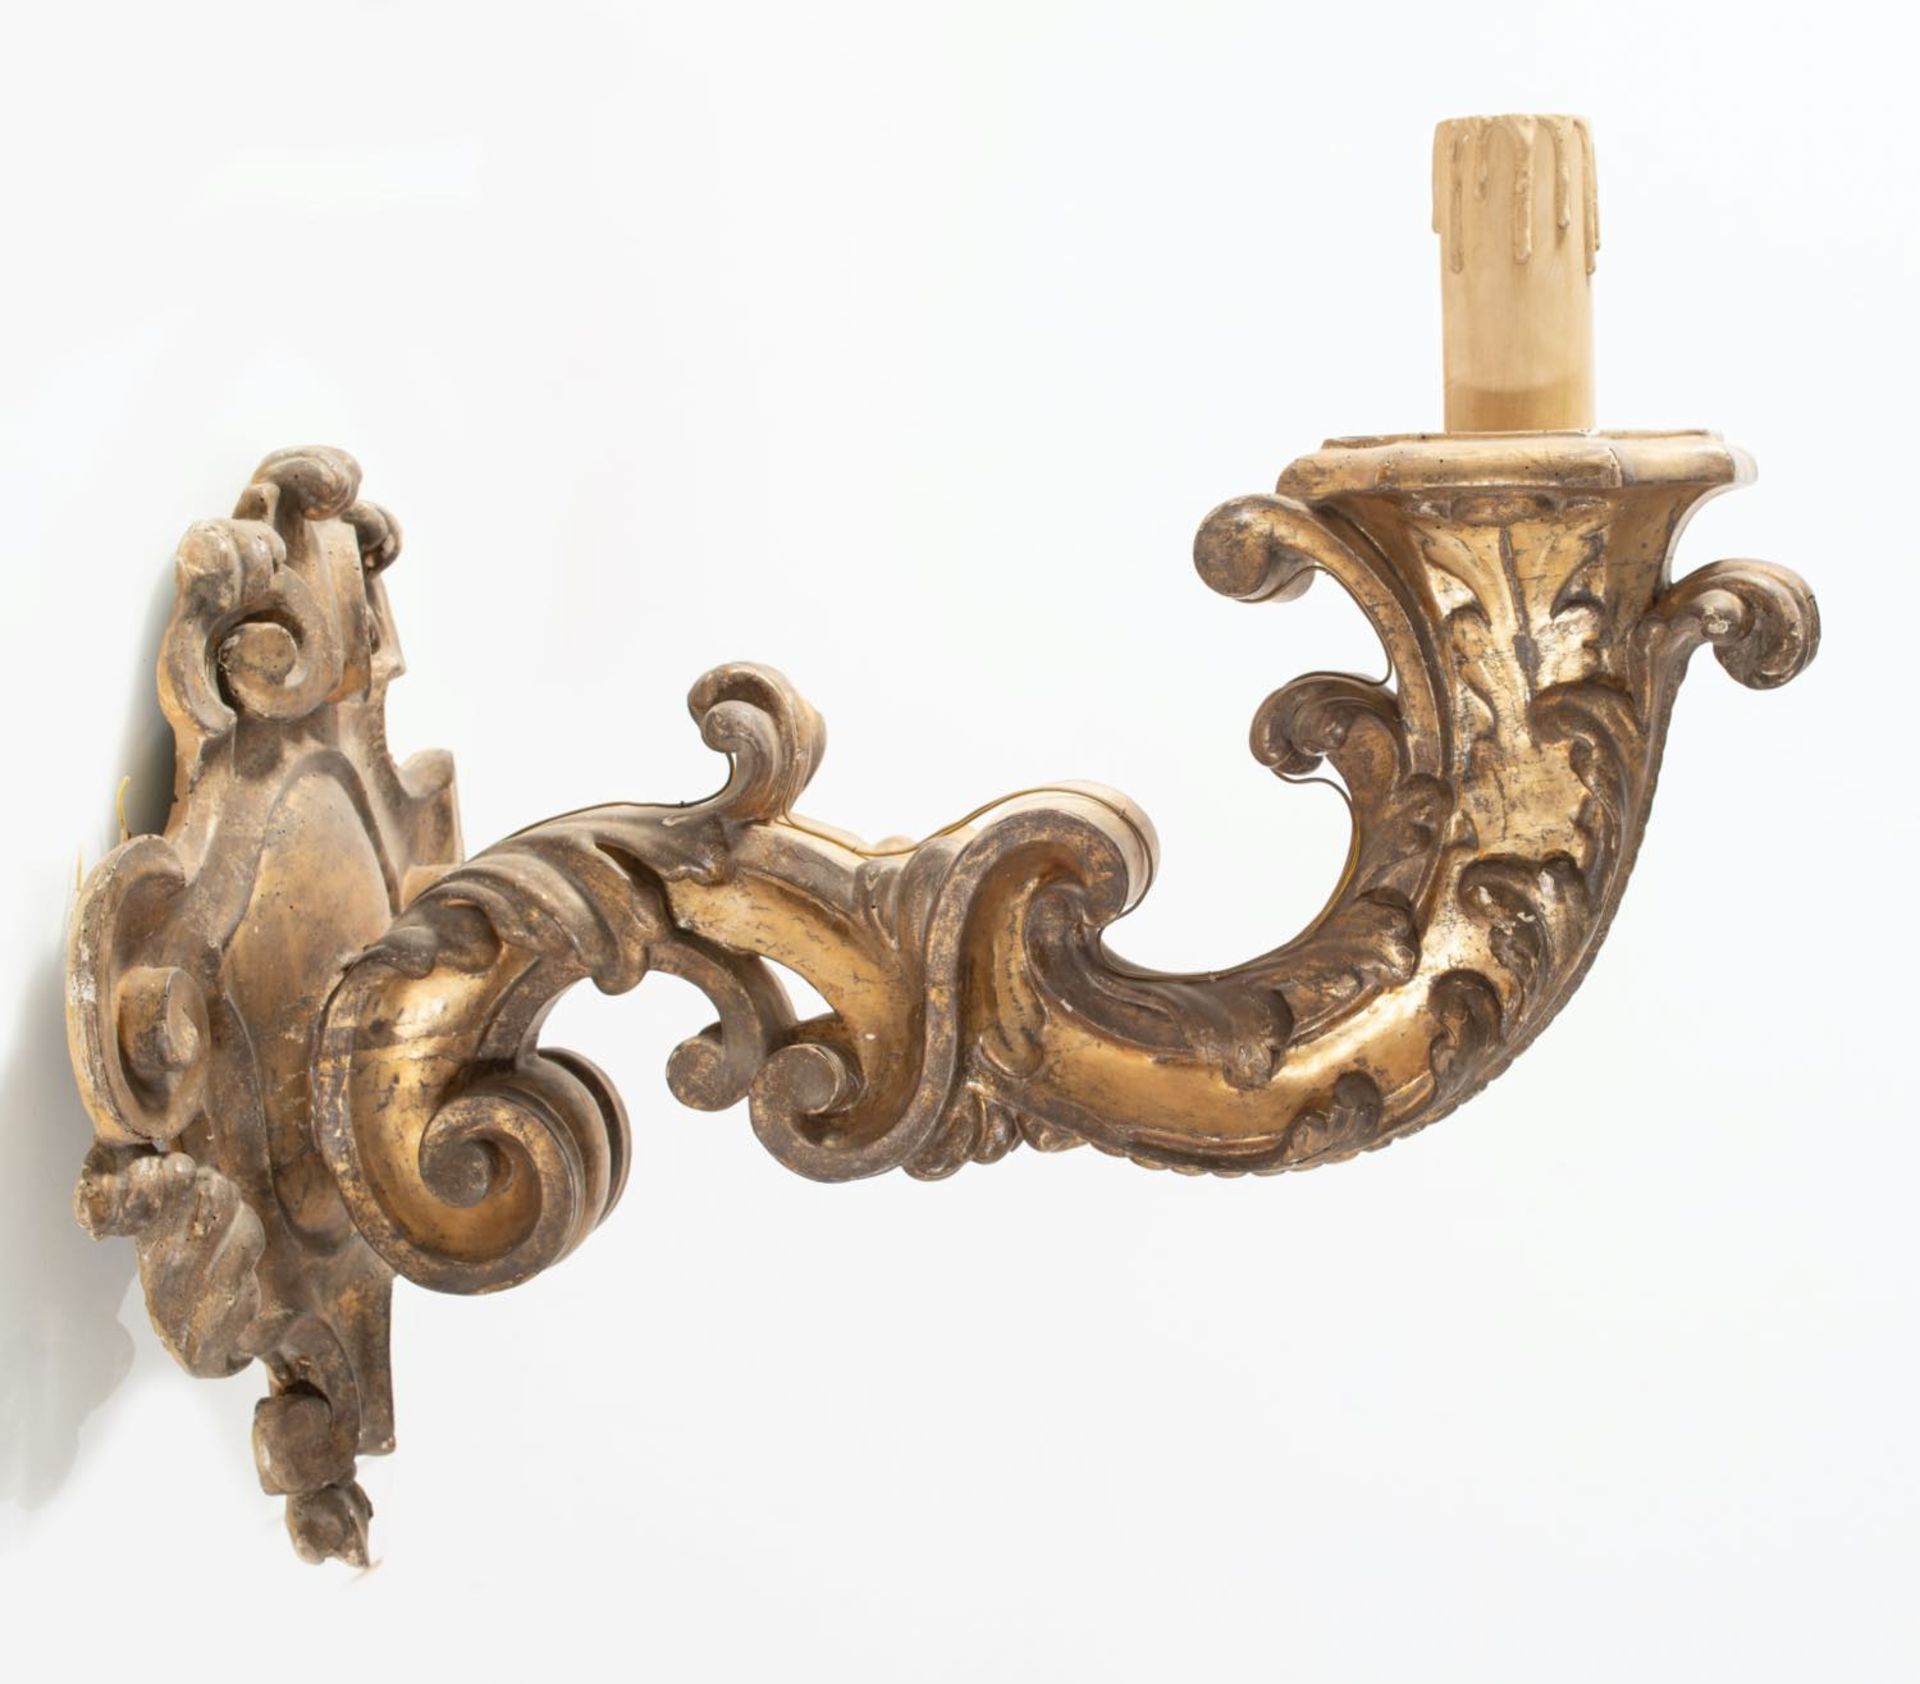 Coppia di torciere in legno intagliato e dorato, XVIII secolo.Corpo riccamente lavorato a volute e - Image 3 of 5